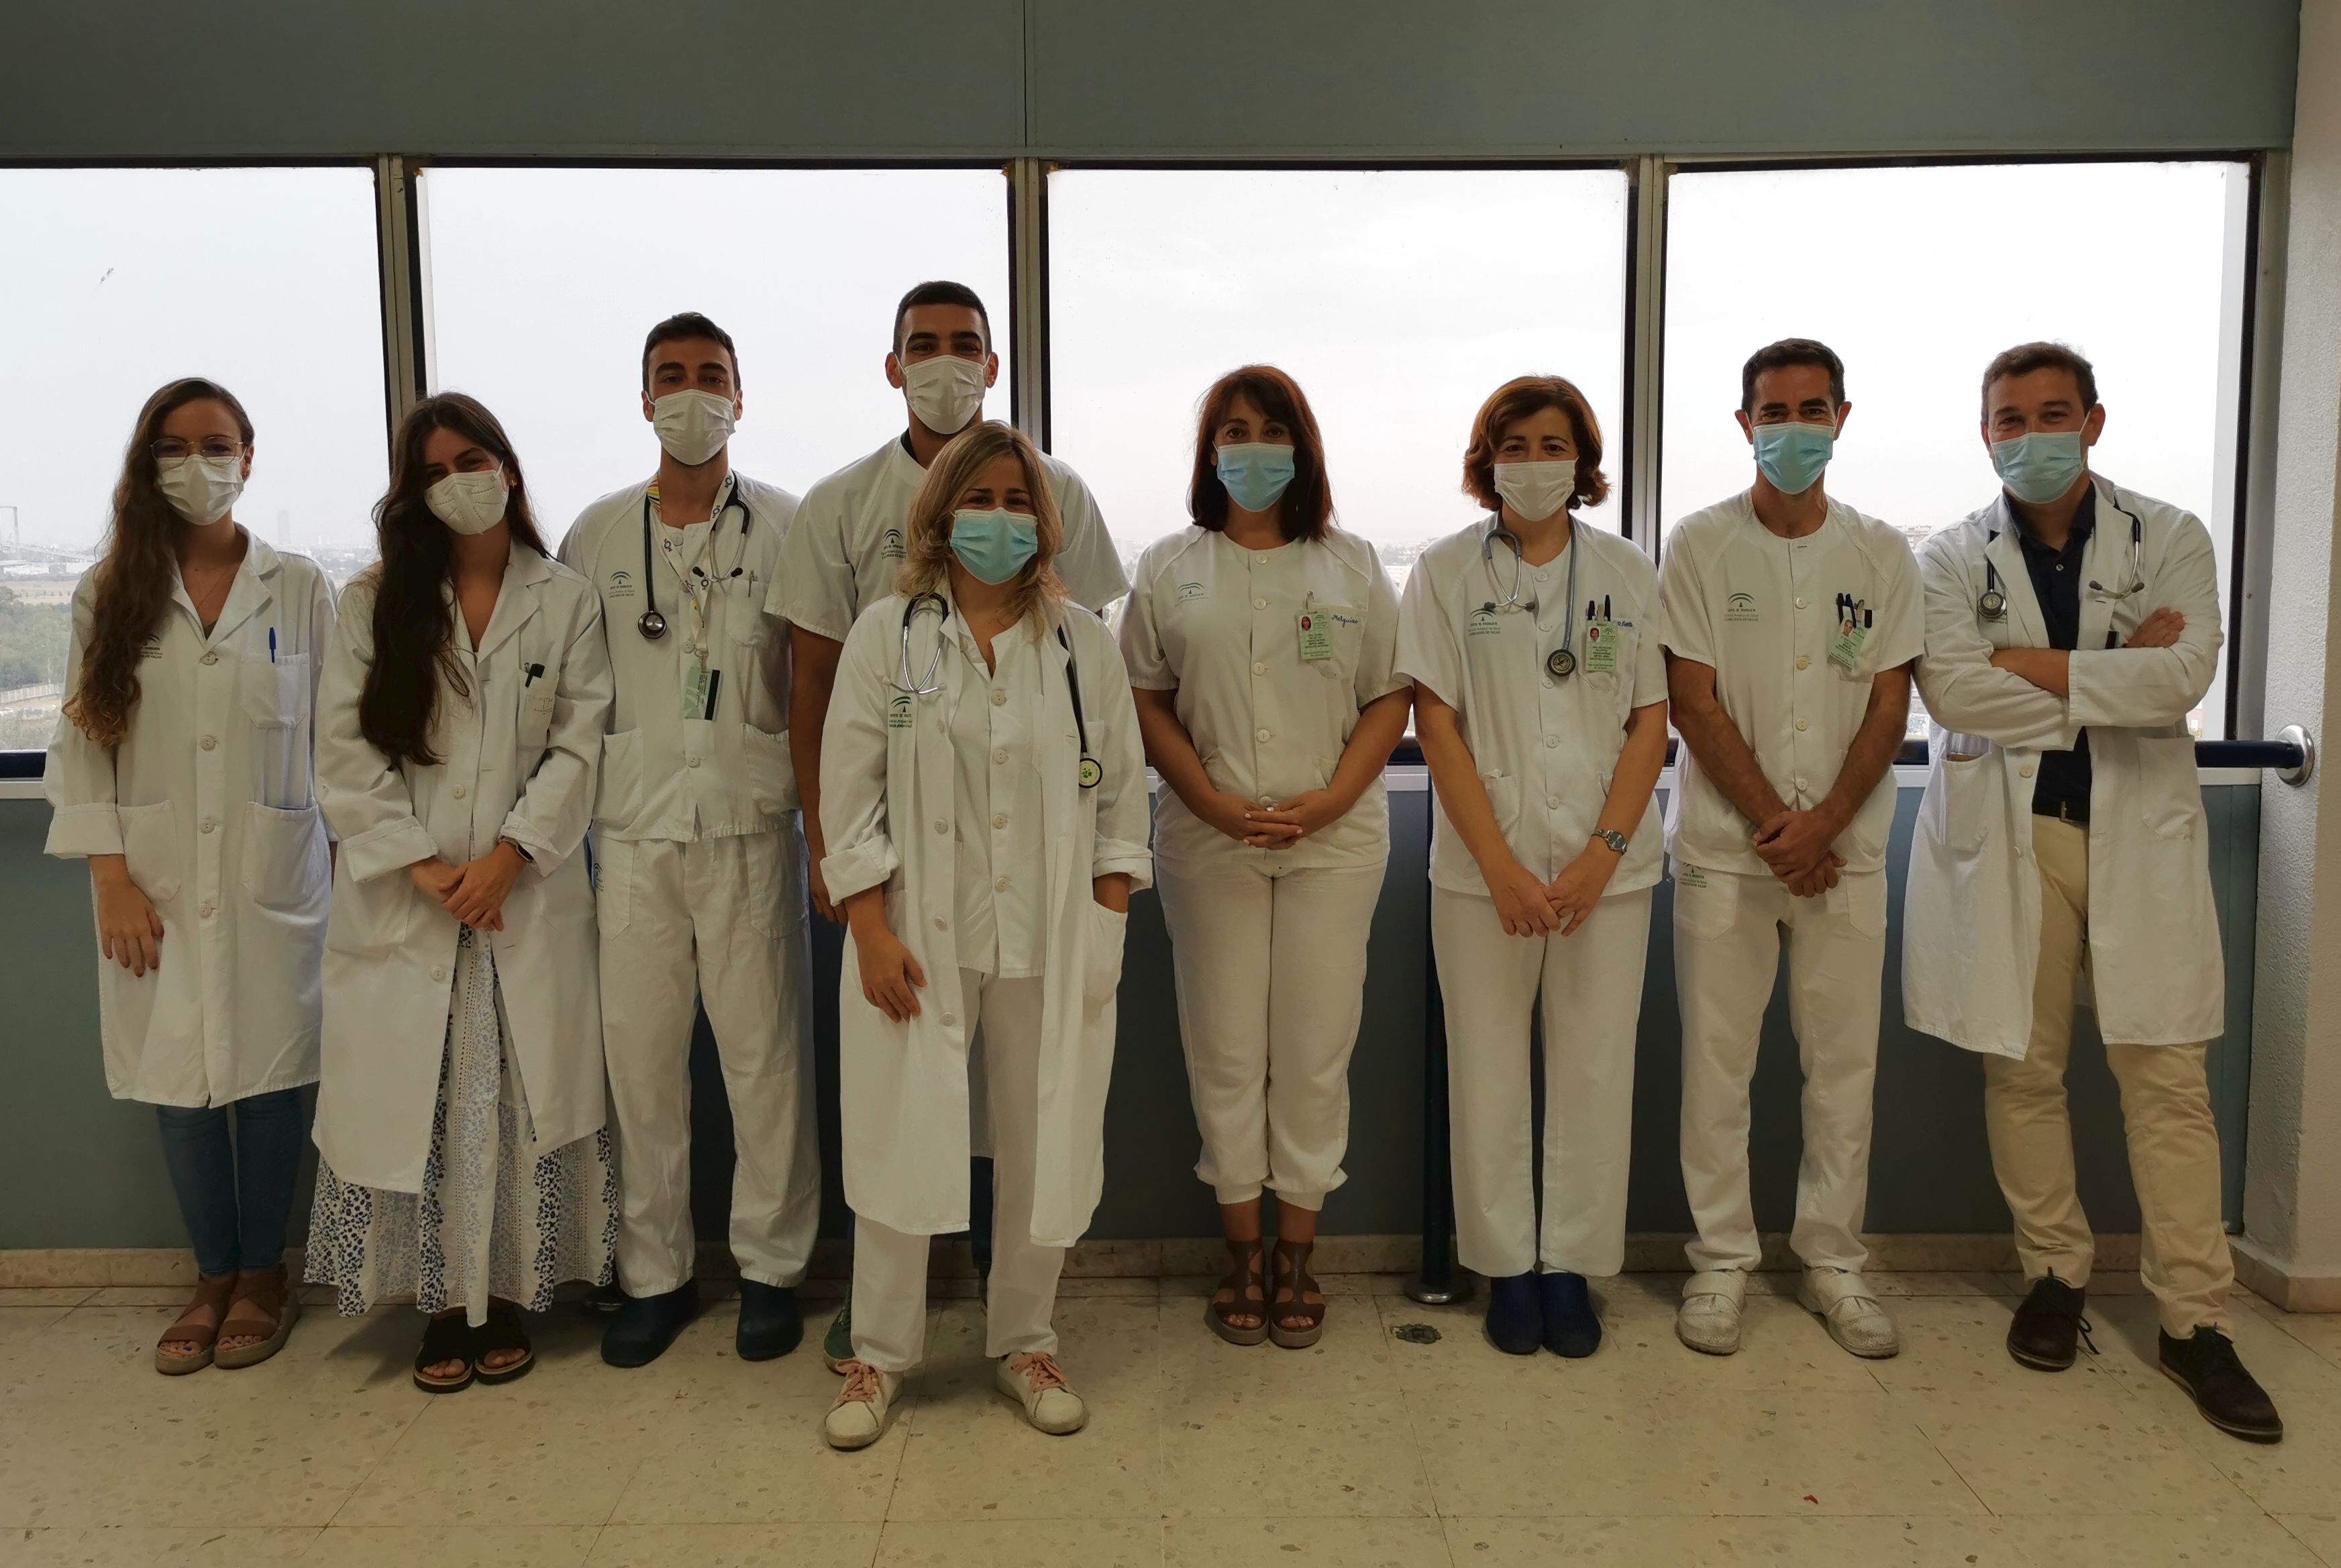 Medicina Interna del Hospital de Valme potencia la investigación durante la pandemia con la creación de un nuevo grupo centrado en el Covid-19